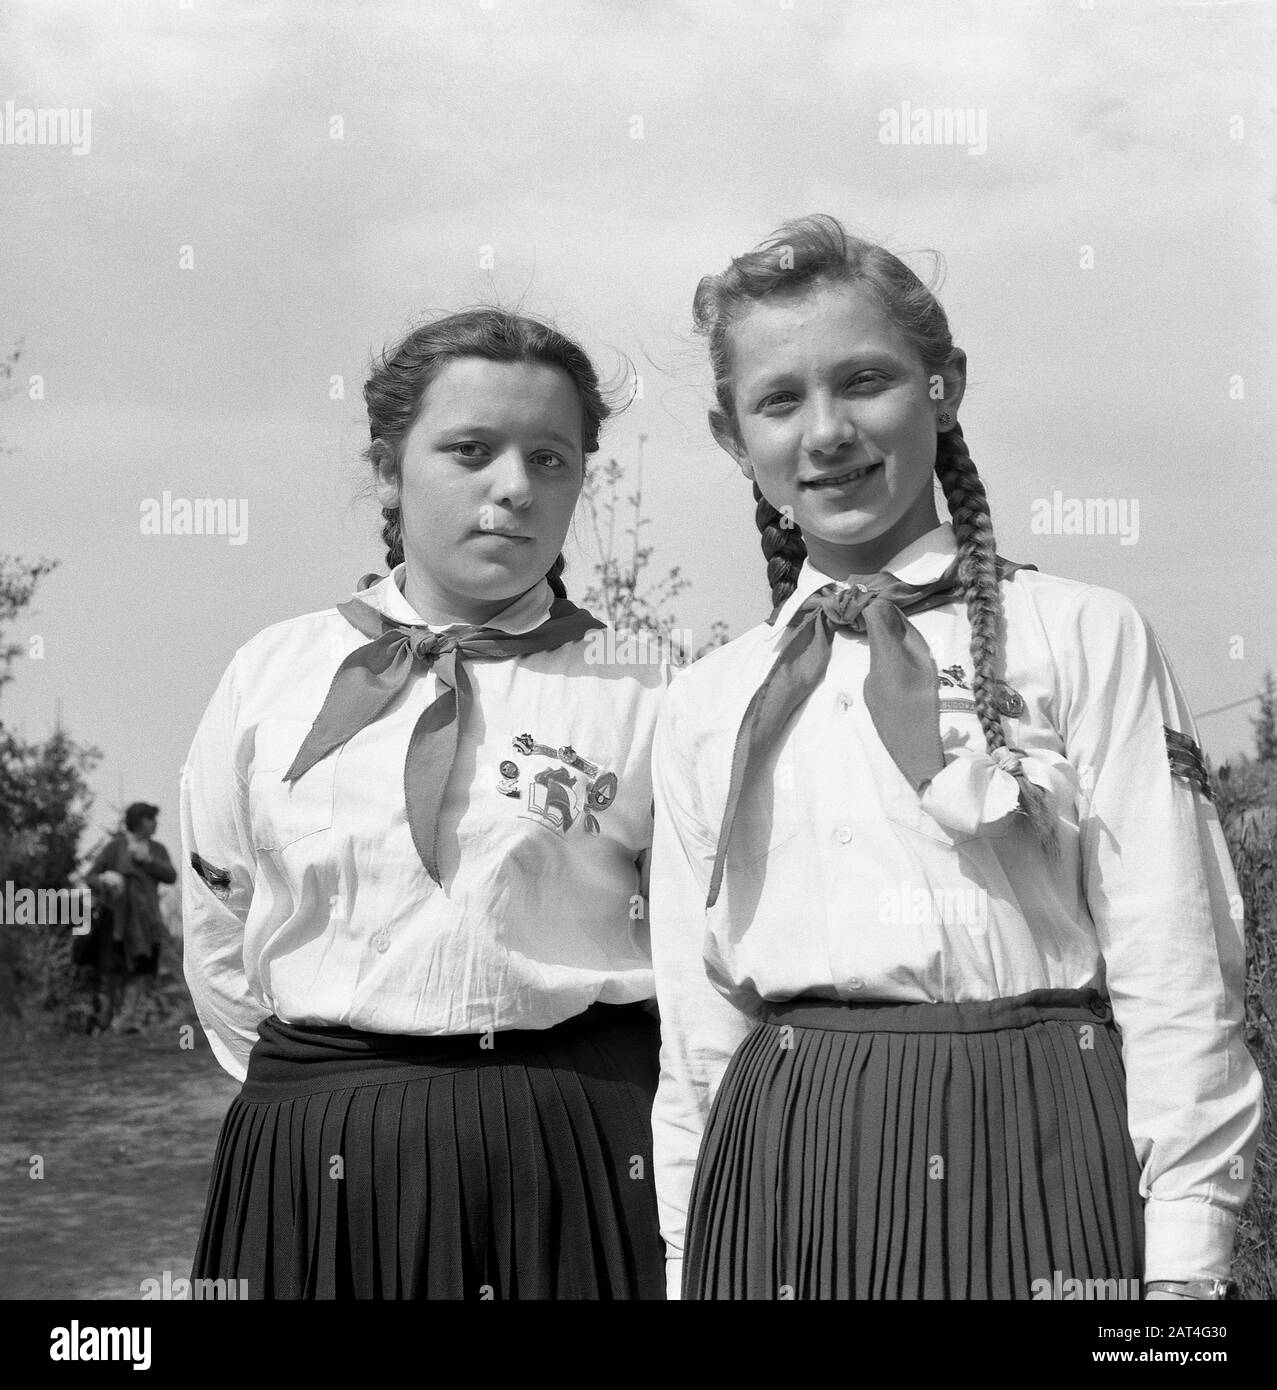 Pionier-Kongress in Nachod, Tschechien (ehemalige Tschechoslowakei), Mai 1959. Zwei stolze Mädchen mit Geflechten in Pionieruniformen mit roten Schals. Stockfoto